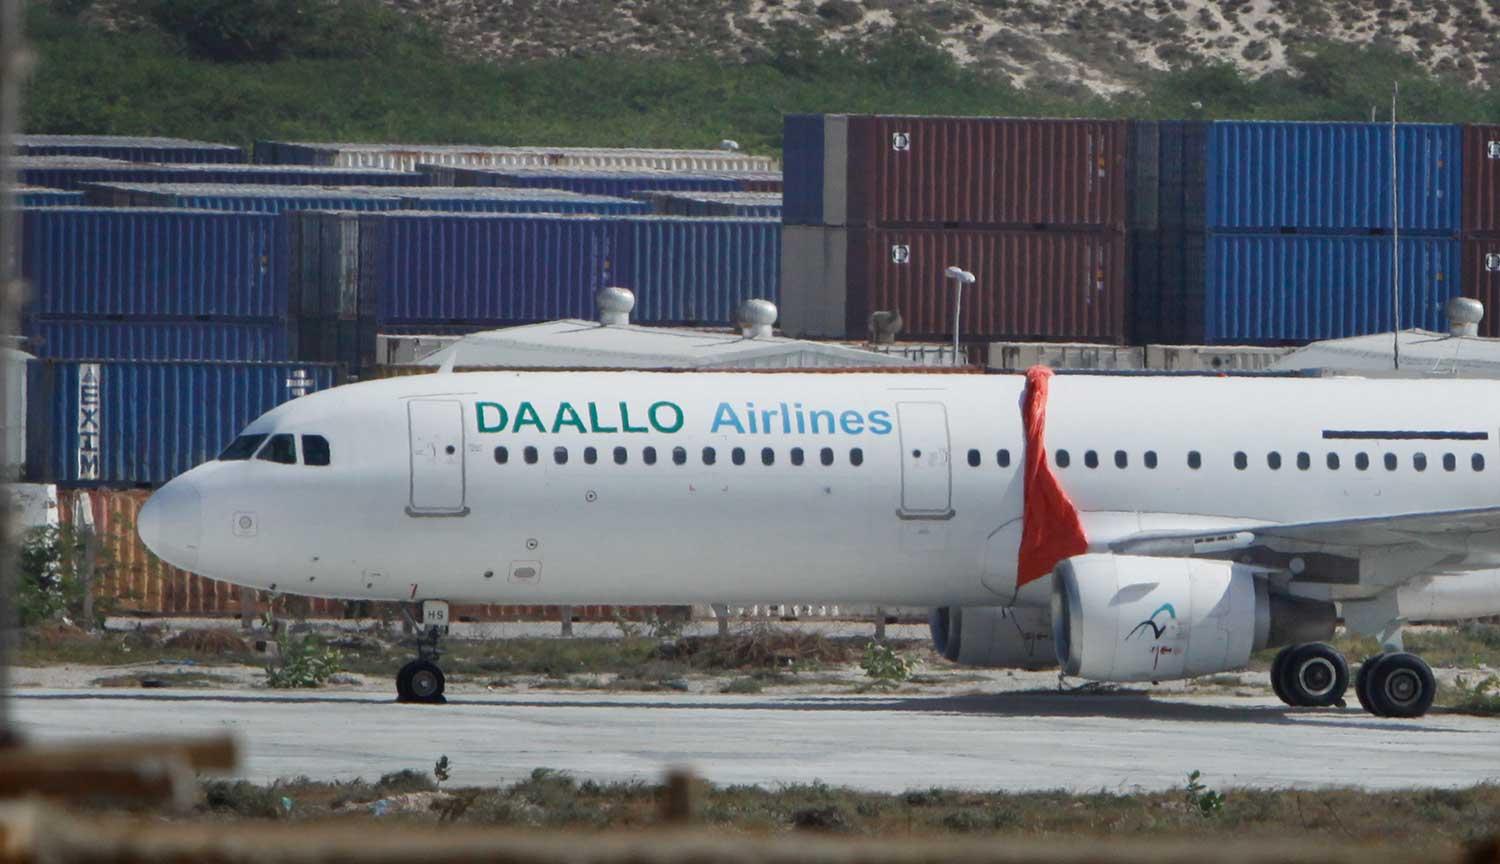 Flygplanet Daallo Airlines flight D3159 tvingades nödlanda i Somalia på grund av ett bombattentat.